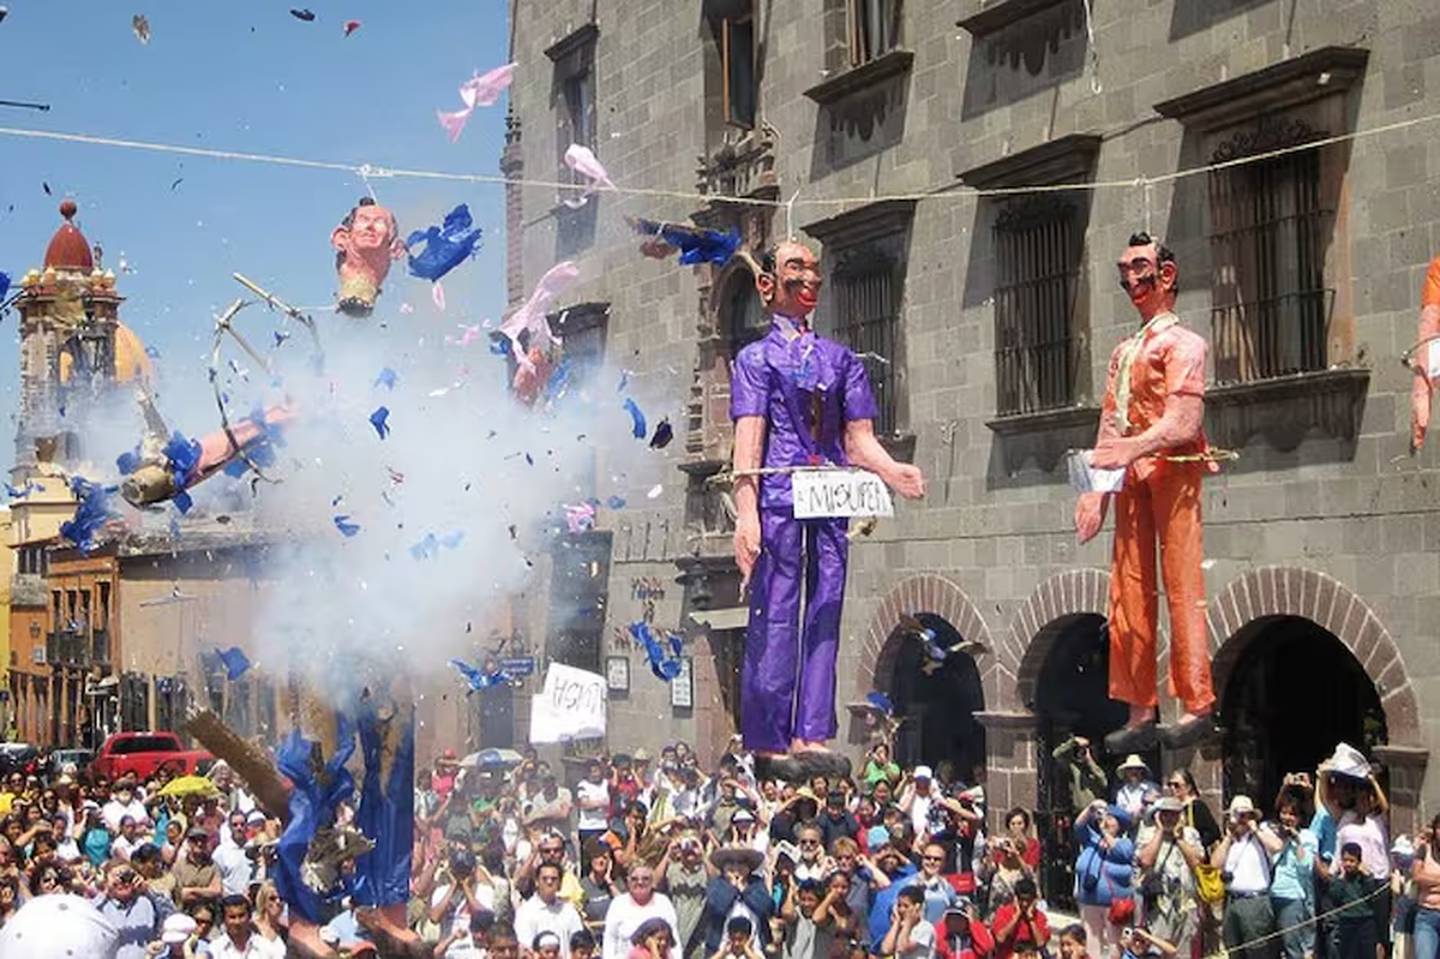 En Pascua en varias localidades mexicanas se lleva a cabo “la quema de los Judas”. Fotografía: La Nación de Argentina.